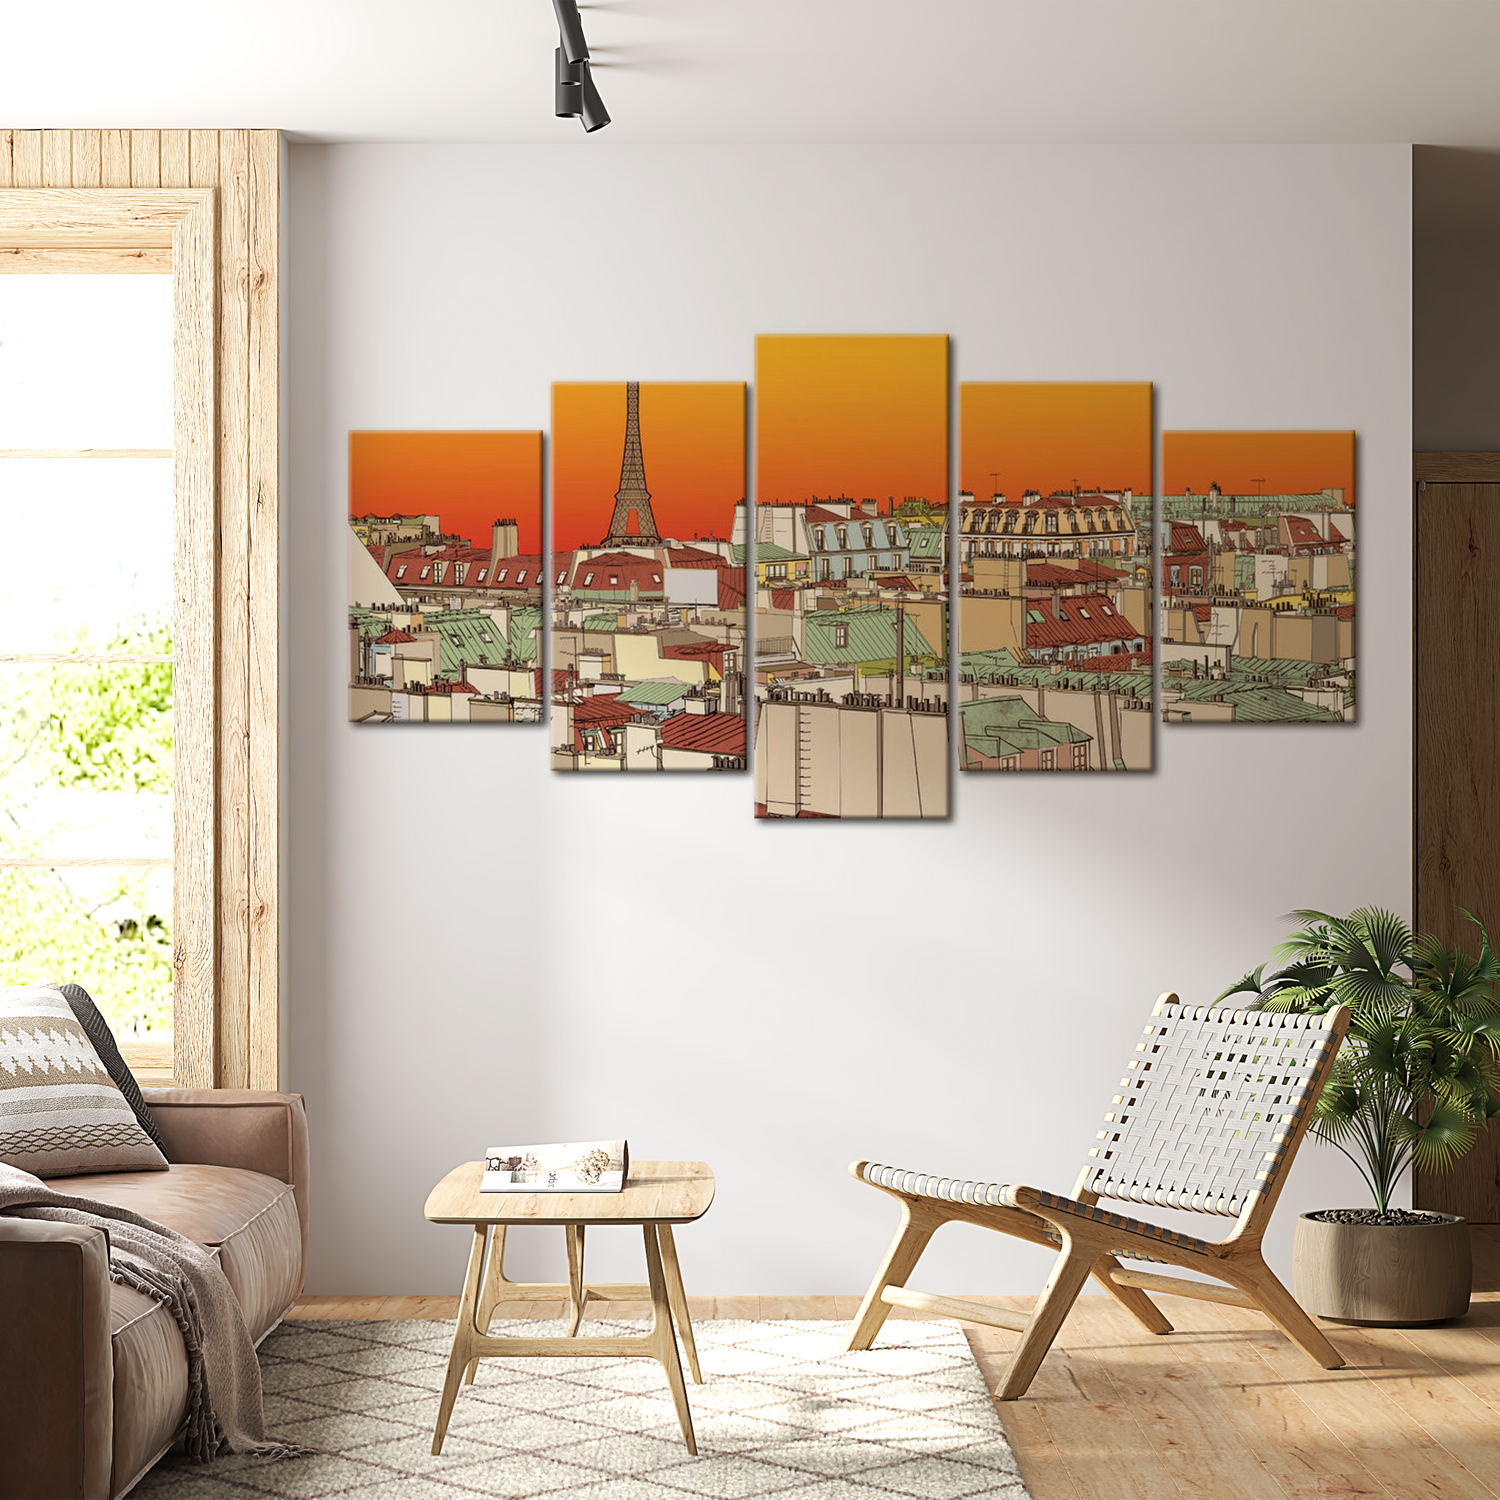 Stretched Canvas Vintage Art - Parisian Sky In Orange Colour 40"Wx20"H